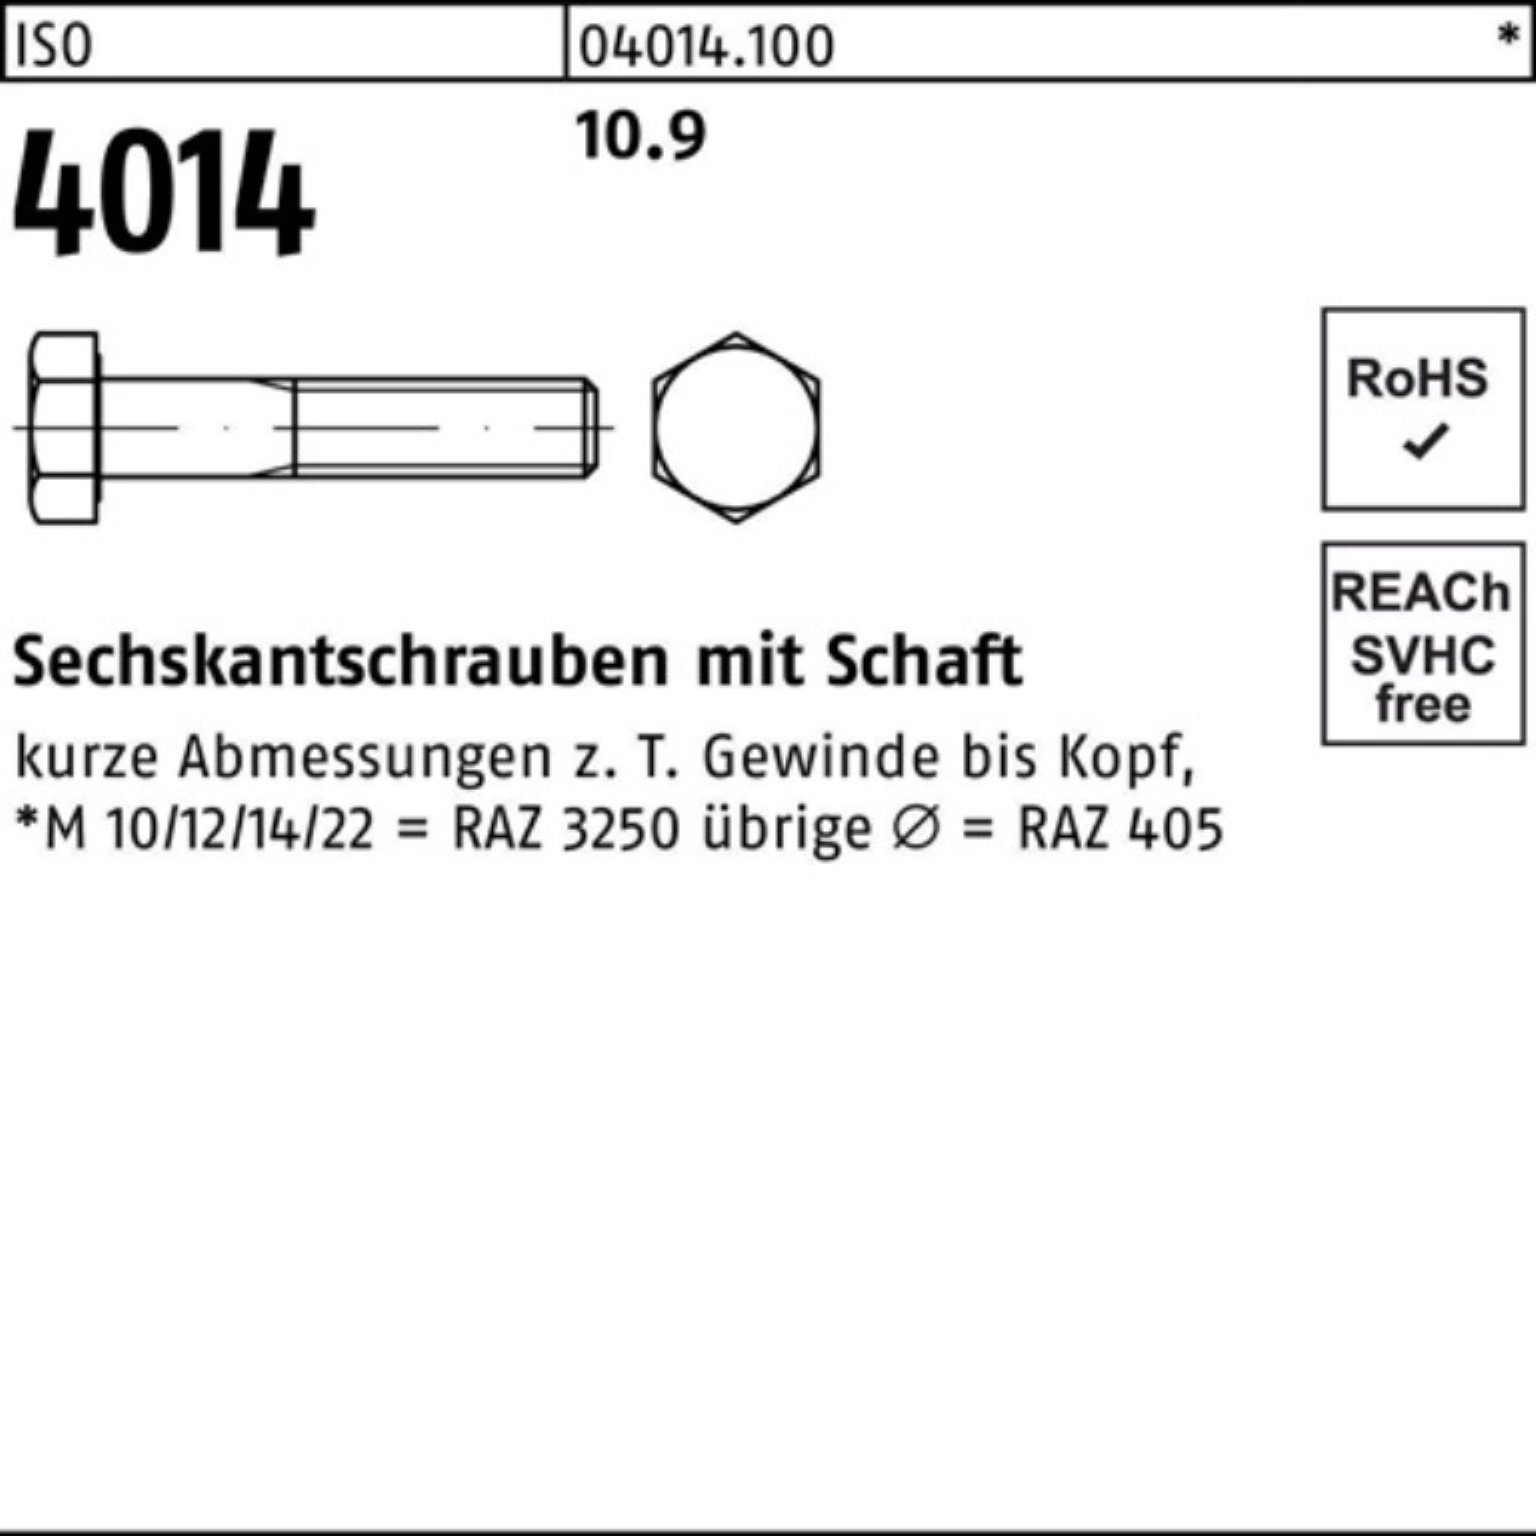 ISO 100er Bufab Sechskantschraube 25 10.9 M18x 4014 Schaft Stück Sechskantschraube Pack 180 I